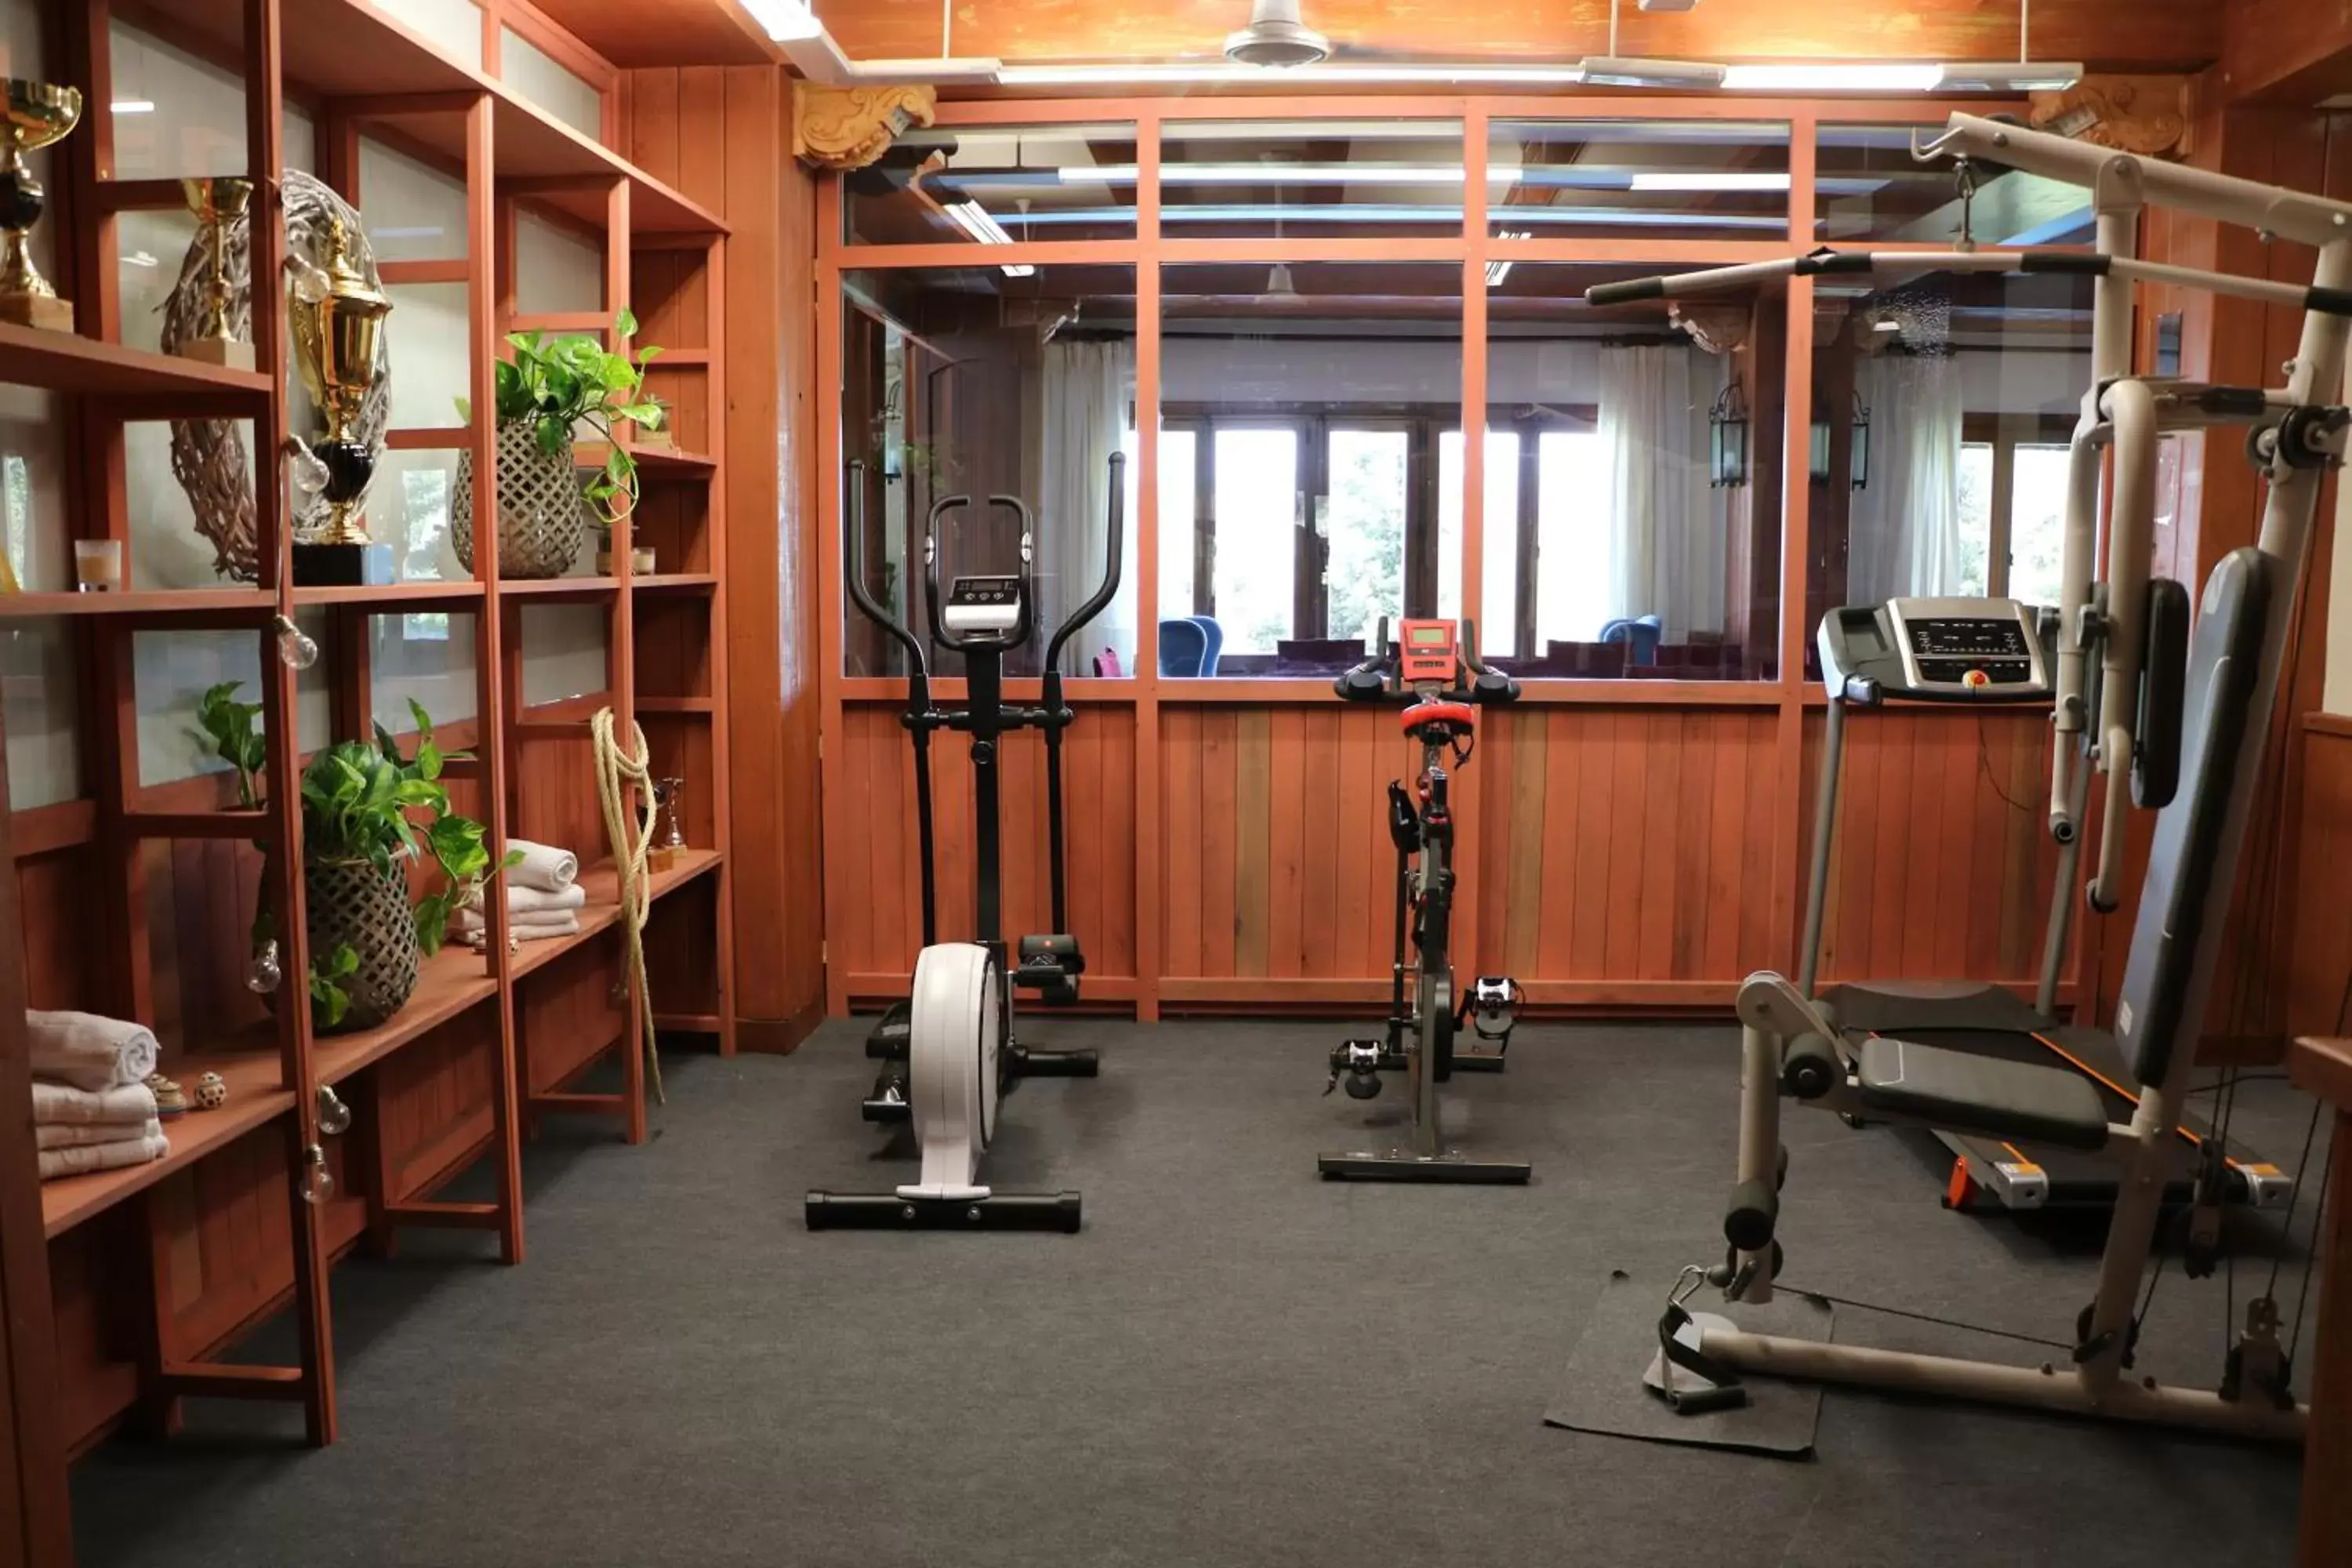 Fitness centre/facilities, Fitness Center/Facilities in Hotel El Guerra